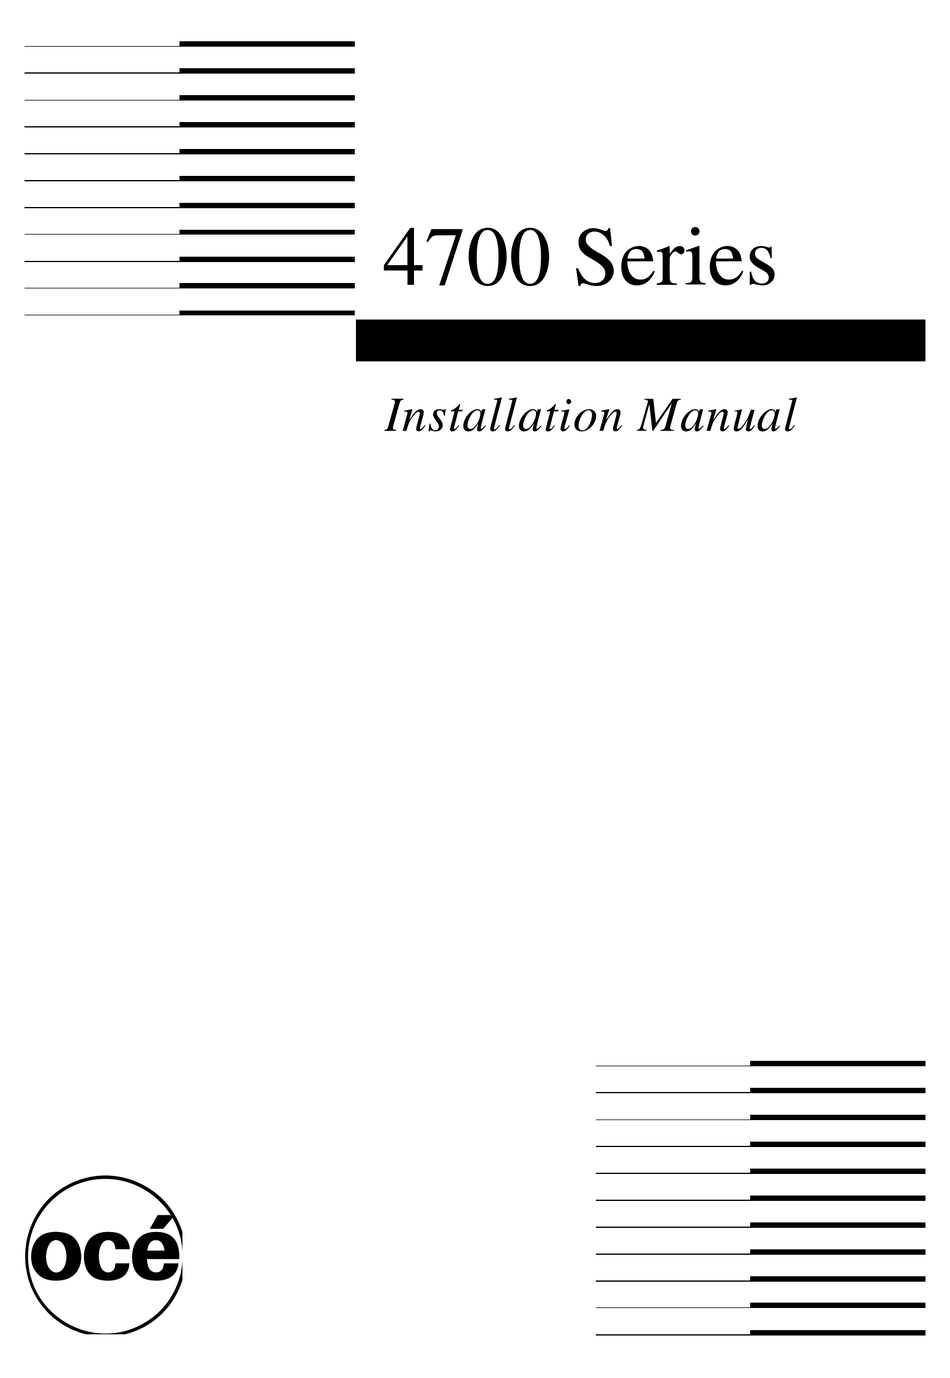 ocenaudio user manual